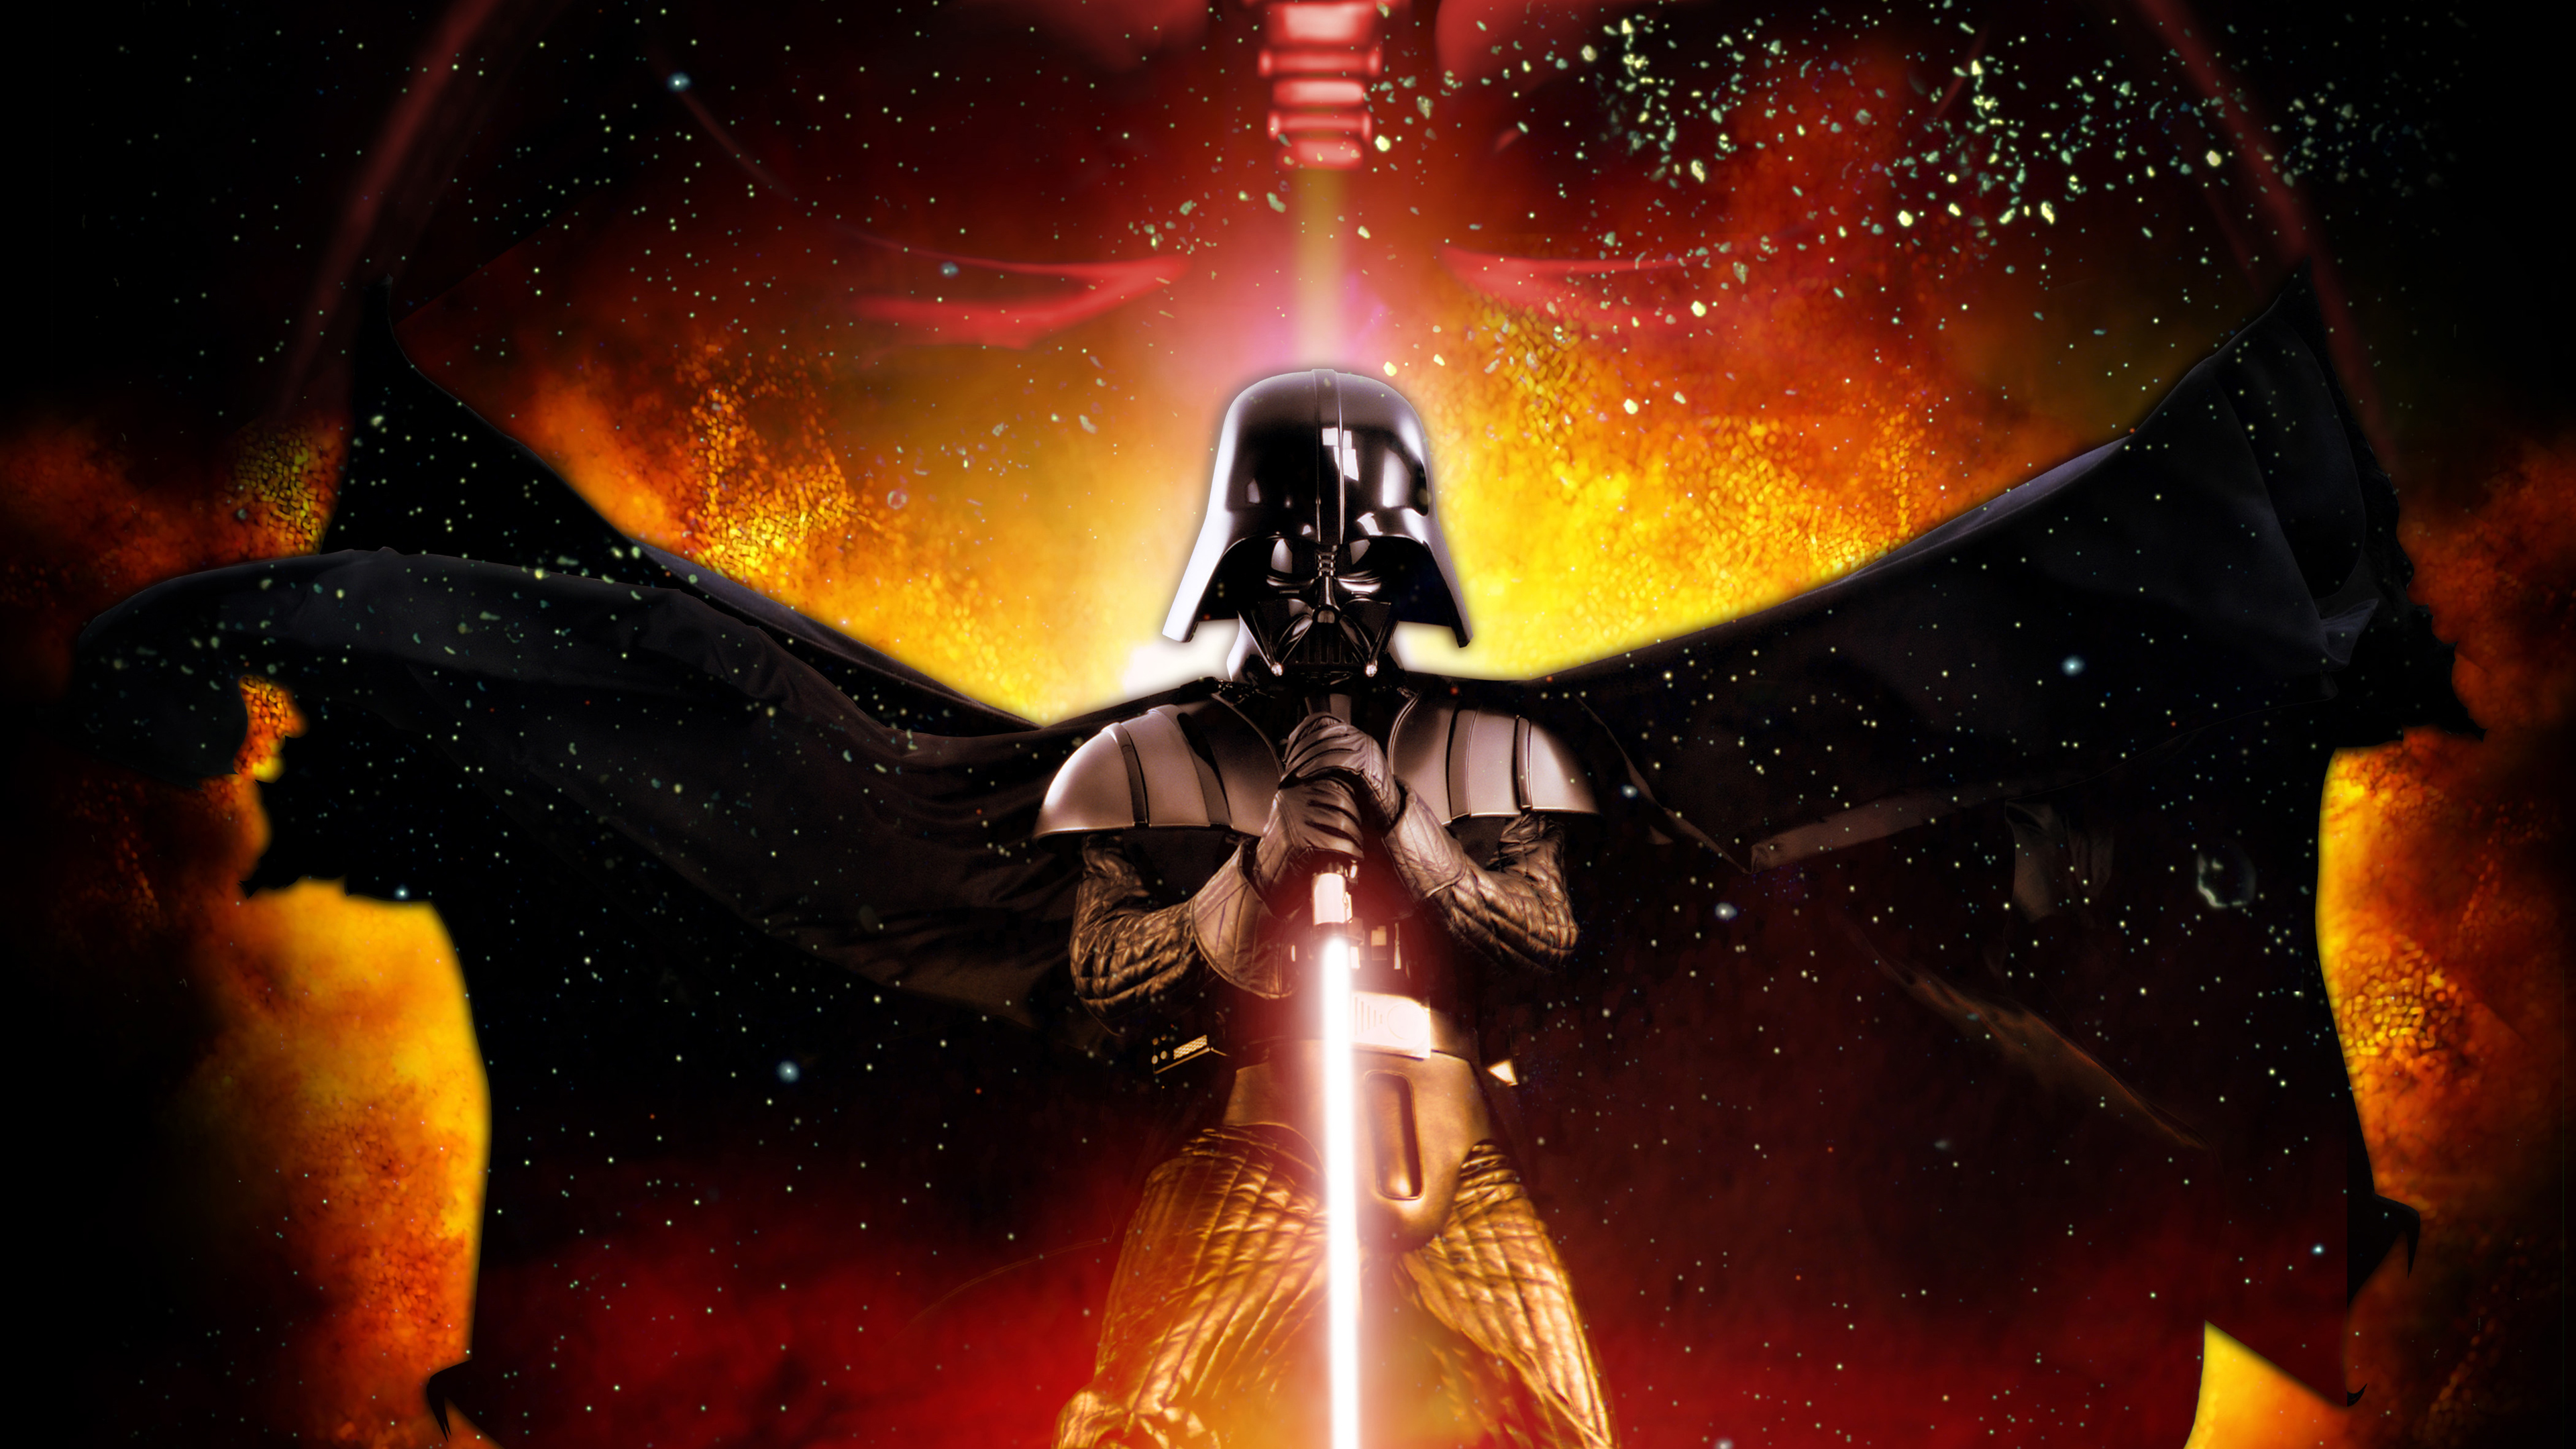 Darth Vader With Wings Lightsaber Sith In Light Wallpaper Star Wars K HD Darth Vader